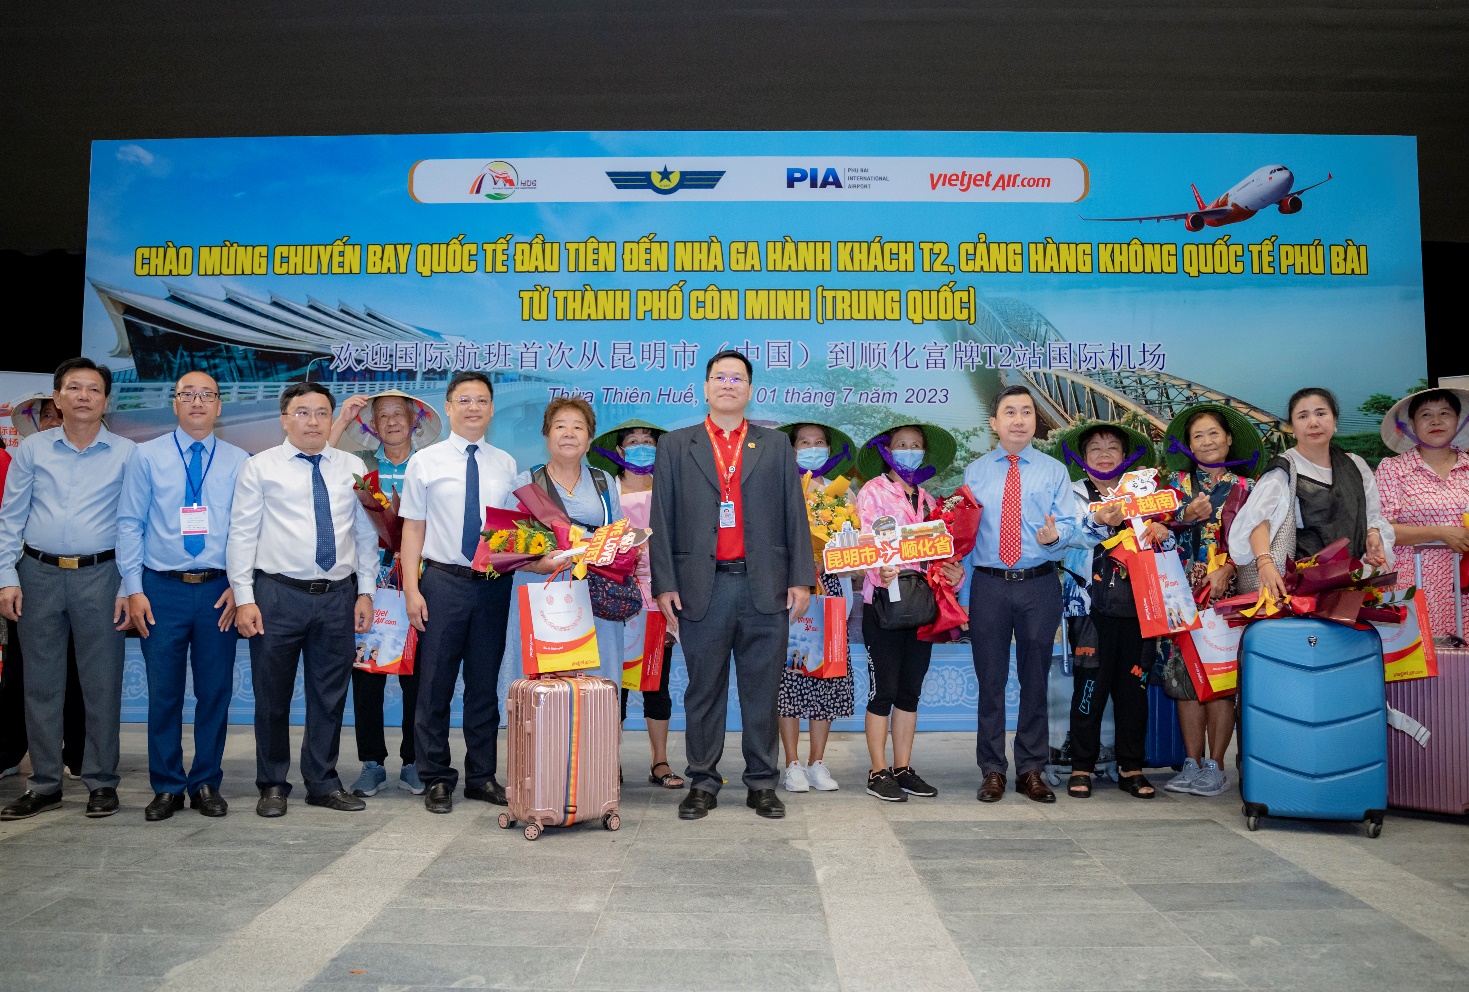 Đón chuyến bay quốc tế đầu tiên đến Nhà ga T2 - Cảng Hàng không quốc tế Phú Bài - 3